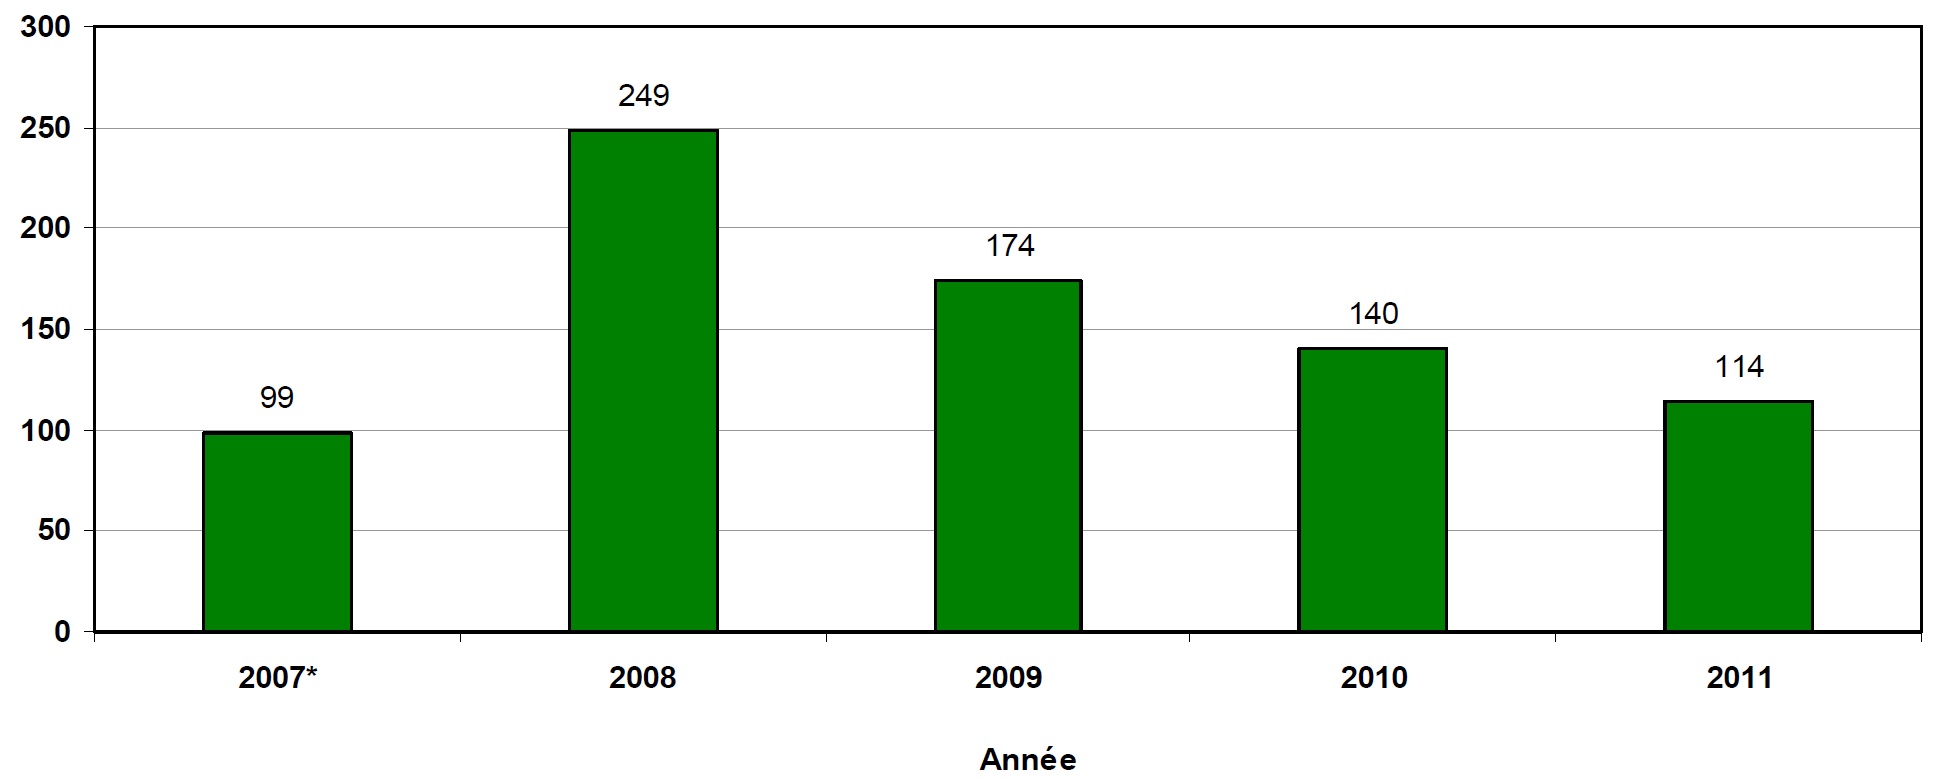 Ce diagramme en bâtons illustre le nombre de dépassements de la limite (contaminants) déclarés par les personnes assujetties à la réglementation depuis le 1<sup>er</sup> août 2007. Il y en a eu 99 en 2007, les dossiers commençant le 1er août 2007; 249 en 2008; 174 en 2009; 140 en 2010; 114 en 2011.